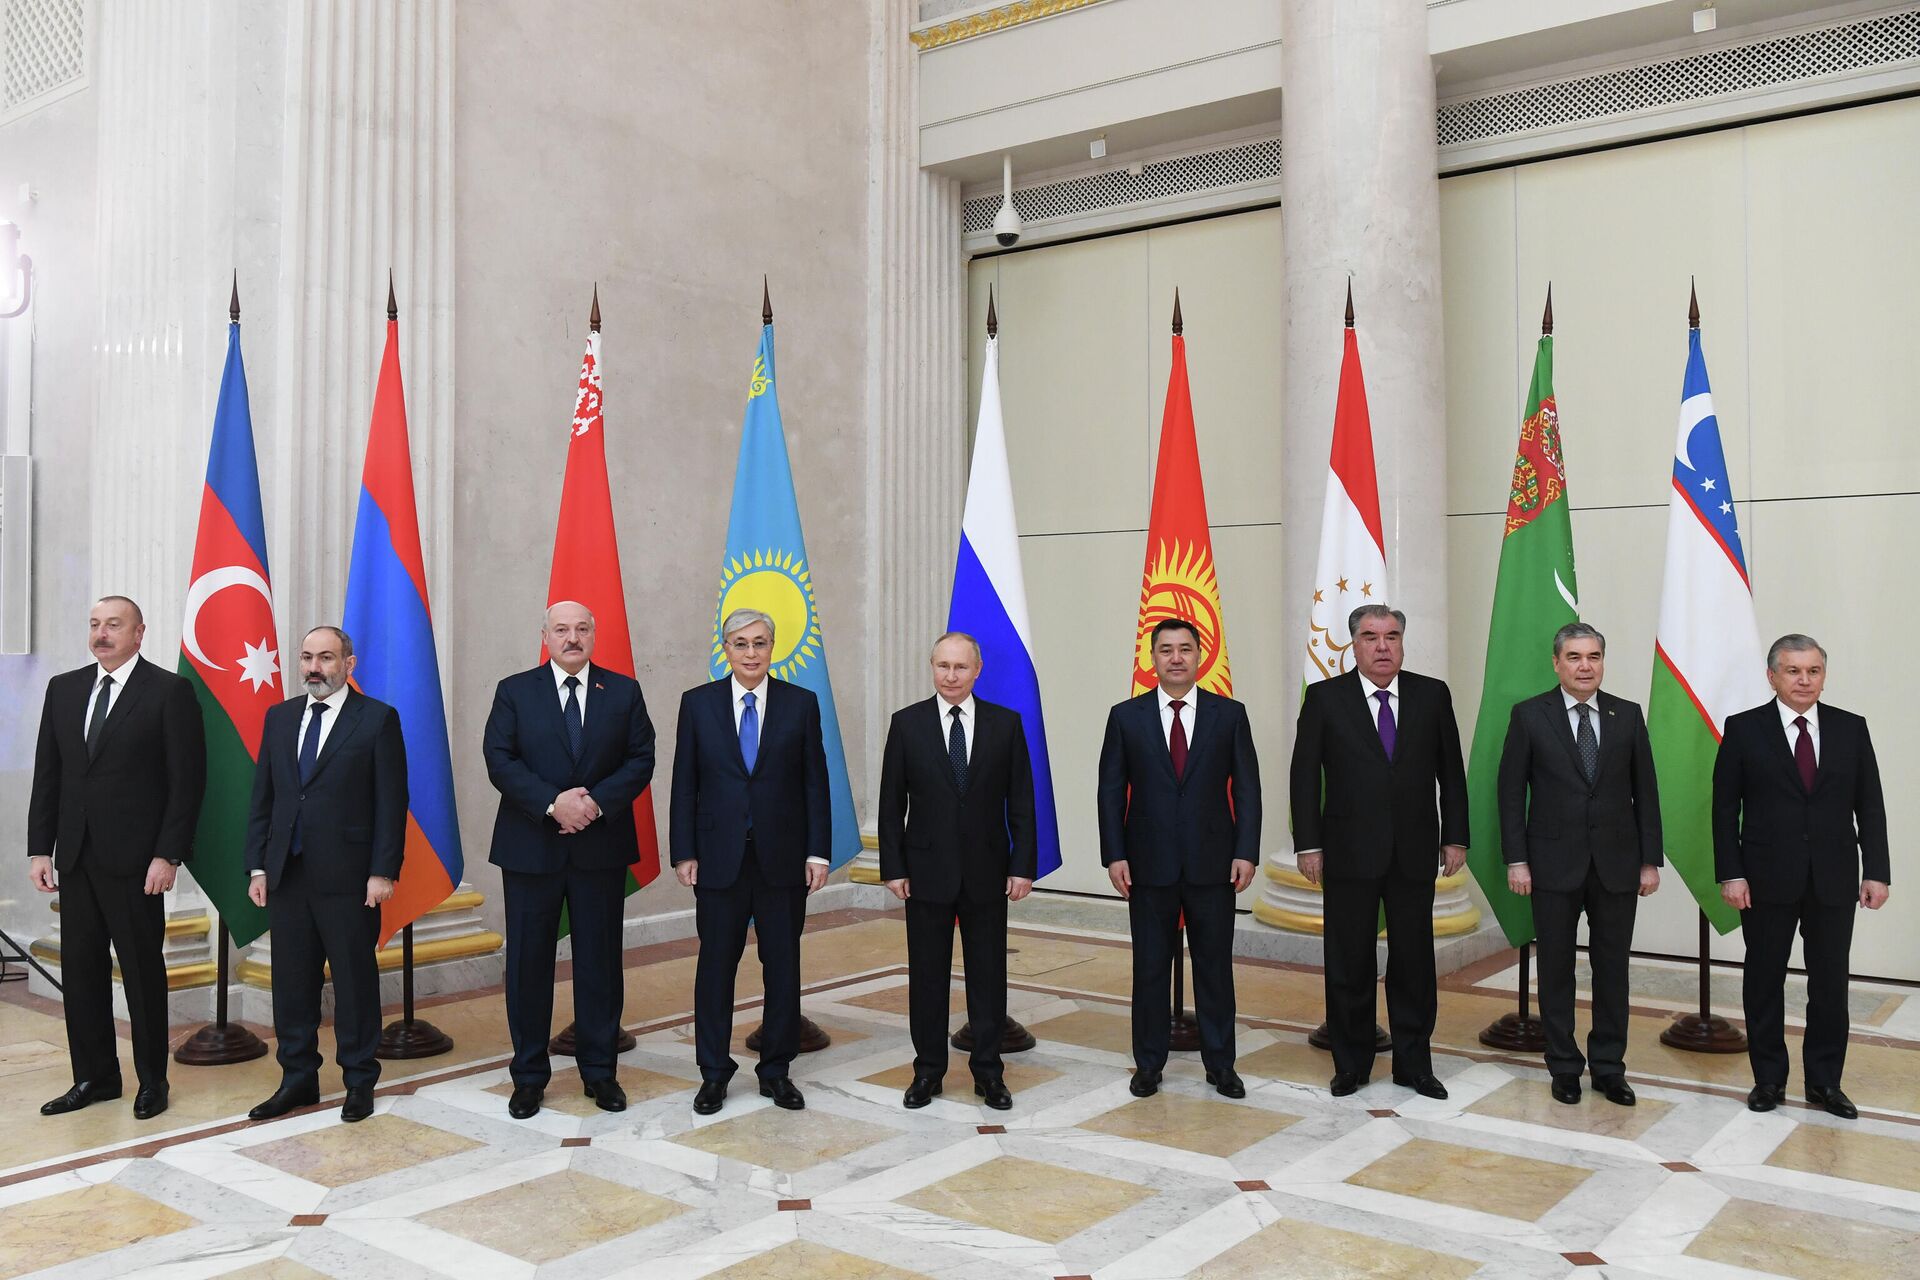 Общая фотография участников неформального саммита лидеров СНГ в Санкт-Петербурге - Sputnik Латвия, 1920, 28.12.2021